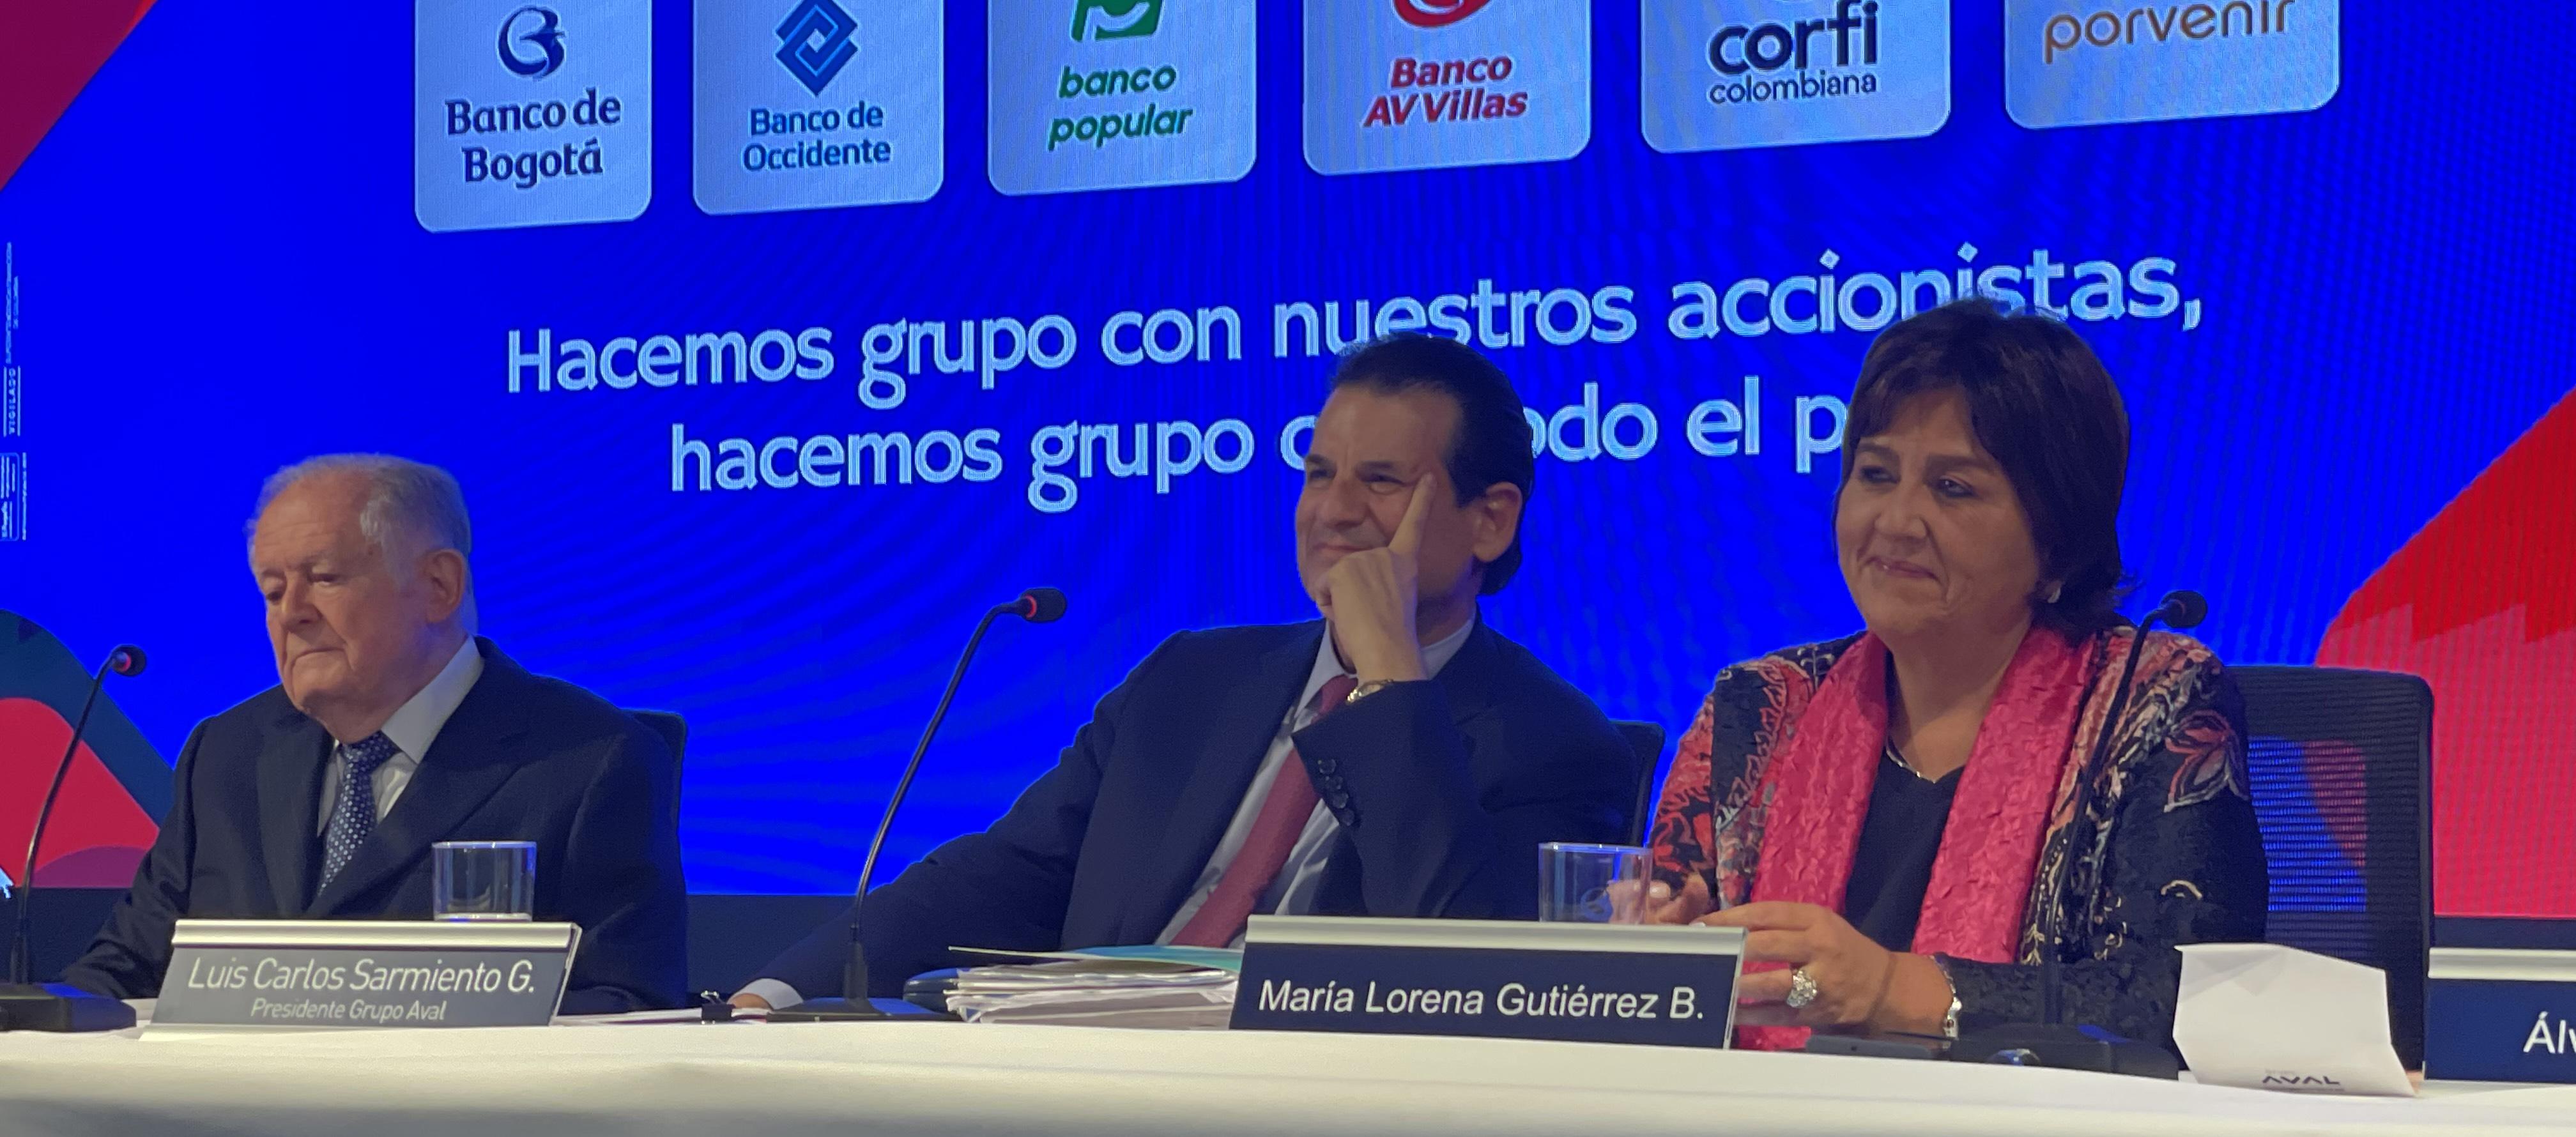 Luis Carlos Sarmieno Angulo, Luis Carlos Sarmiento Gutiérrez y María Lorena Gutiérrez